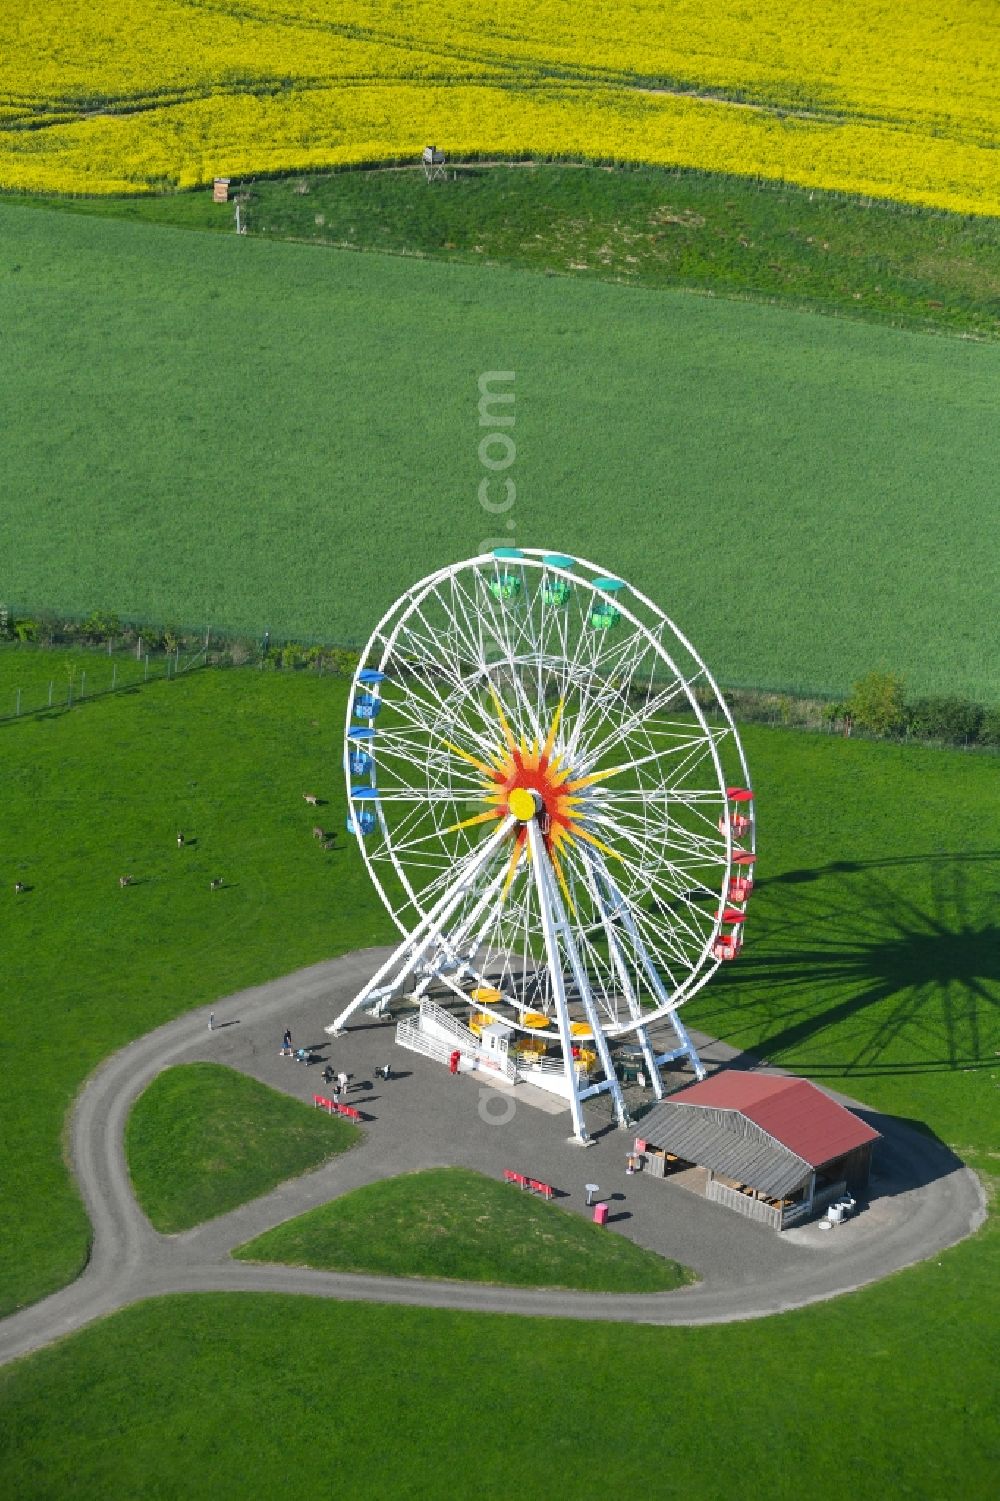 Lichtenau from the bird's eye view: Leisure Centre with ferris wheel - Amusement Park of Erlebnis- and Freizeitpark Lichtenau GmbH & Co. KG on Sachsenstrasse in the district Oberlichtenau in Lichtenau in the state Saxony, Germany